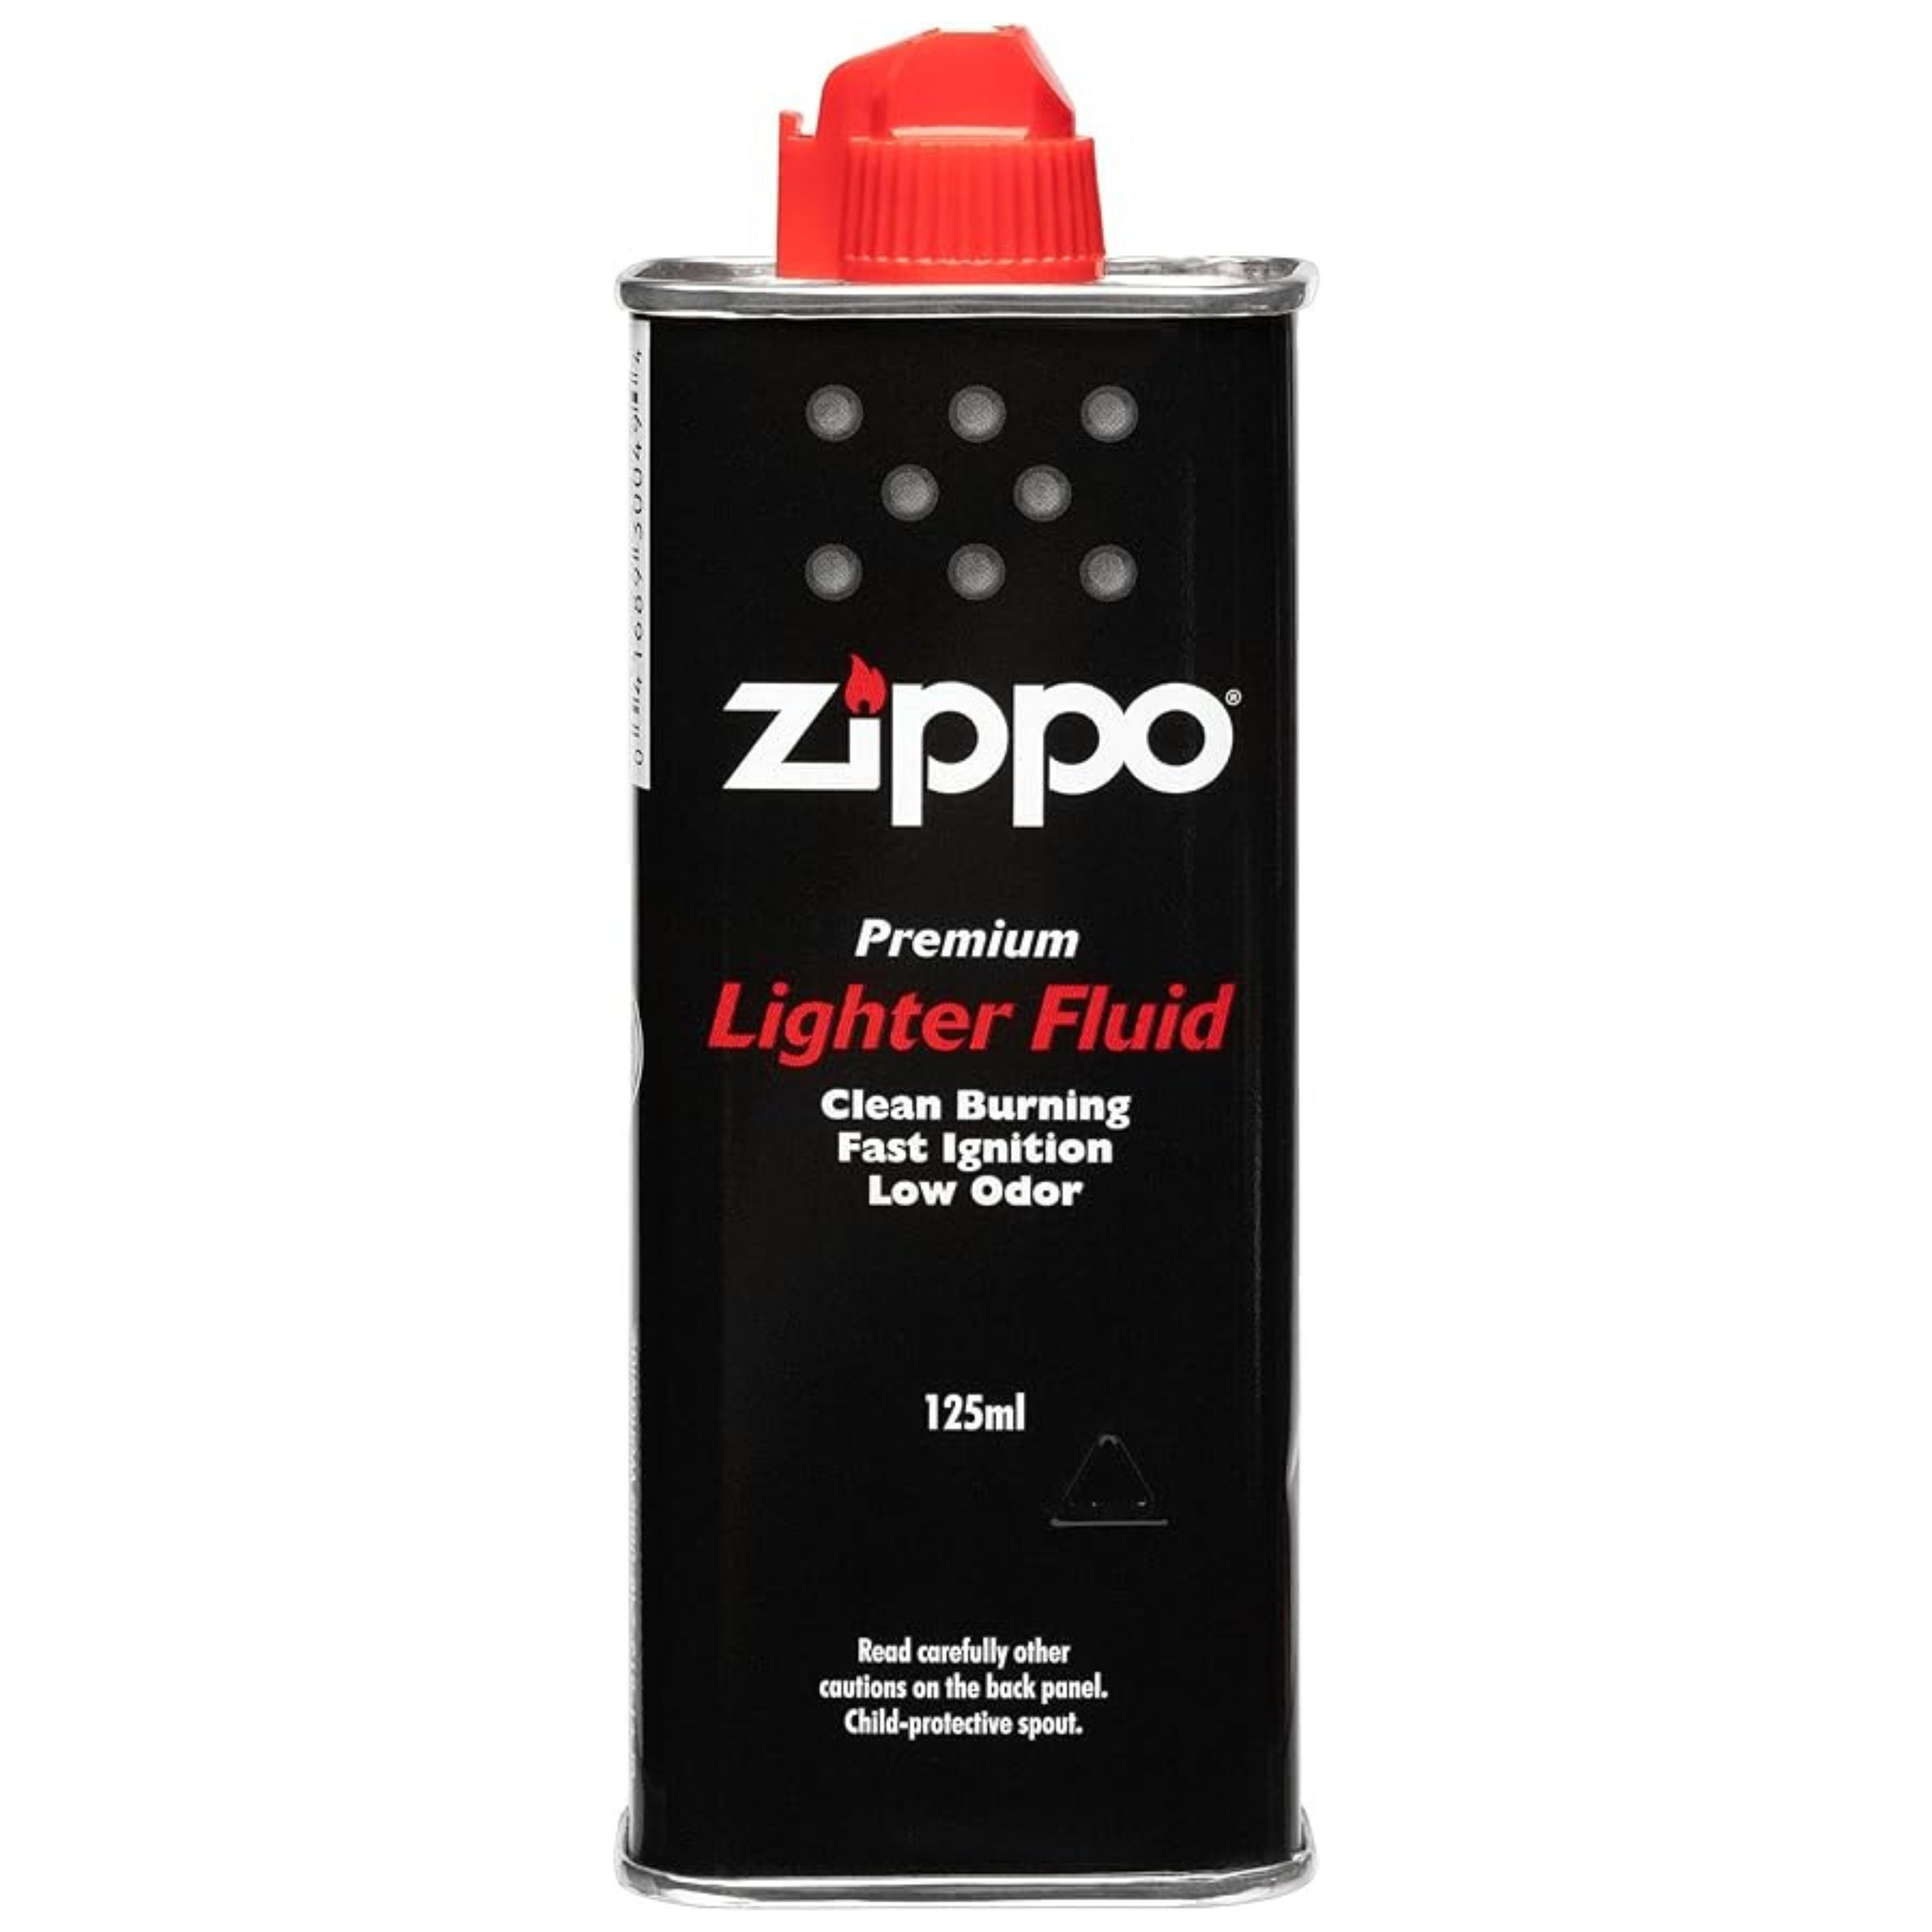 Lighter fluid - 4 oz